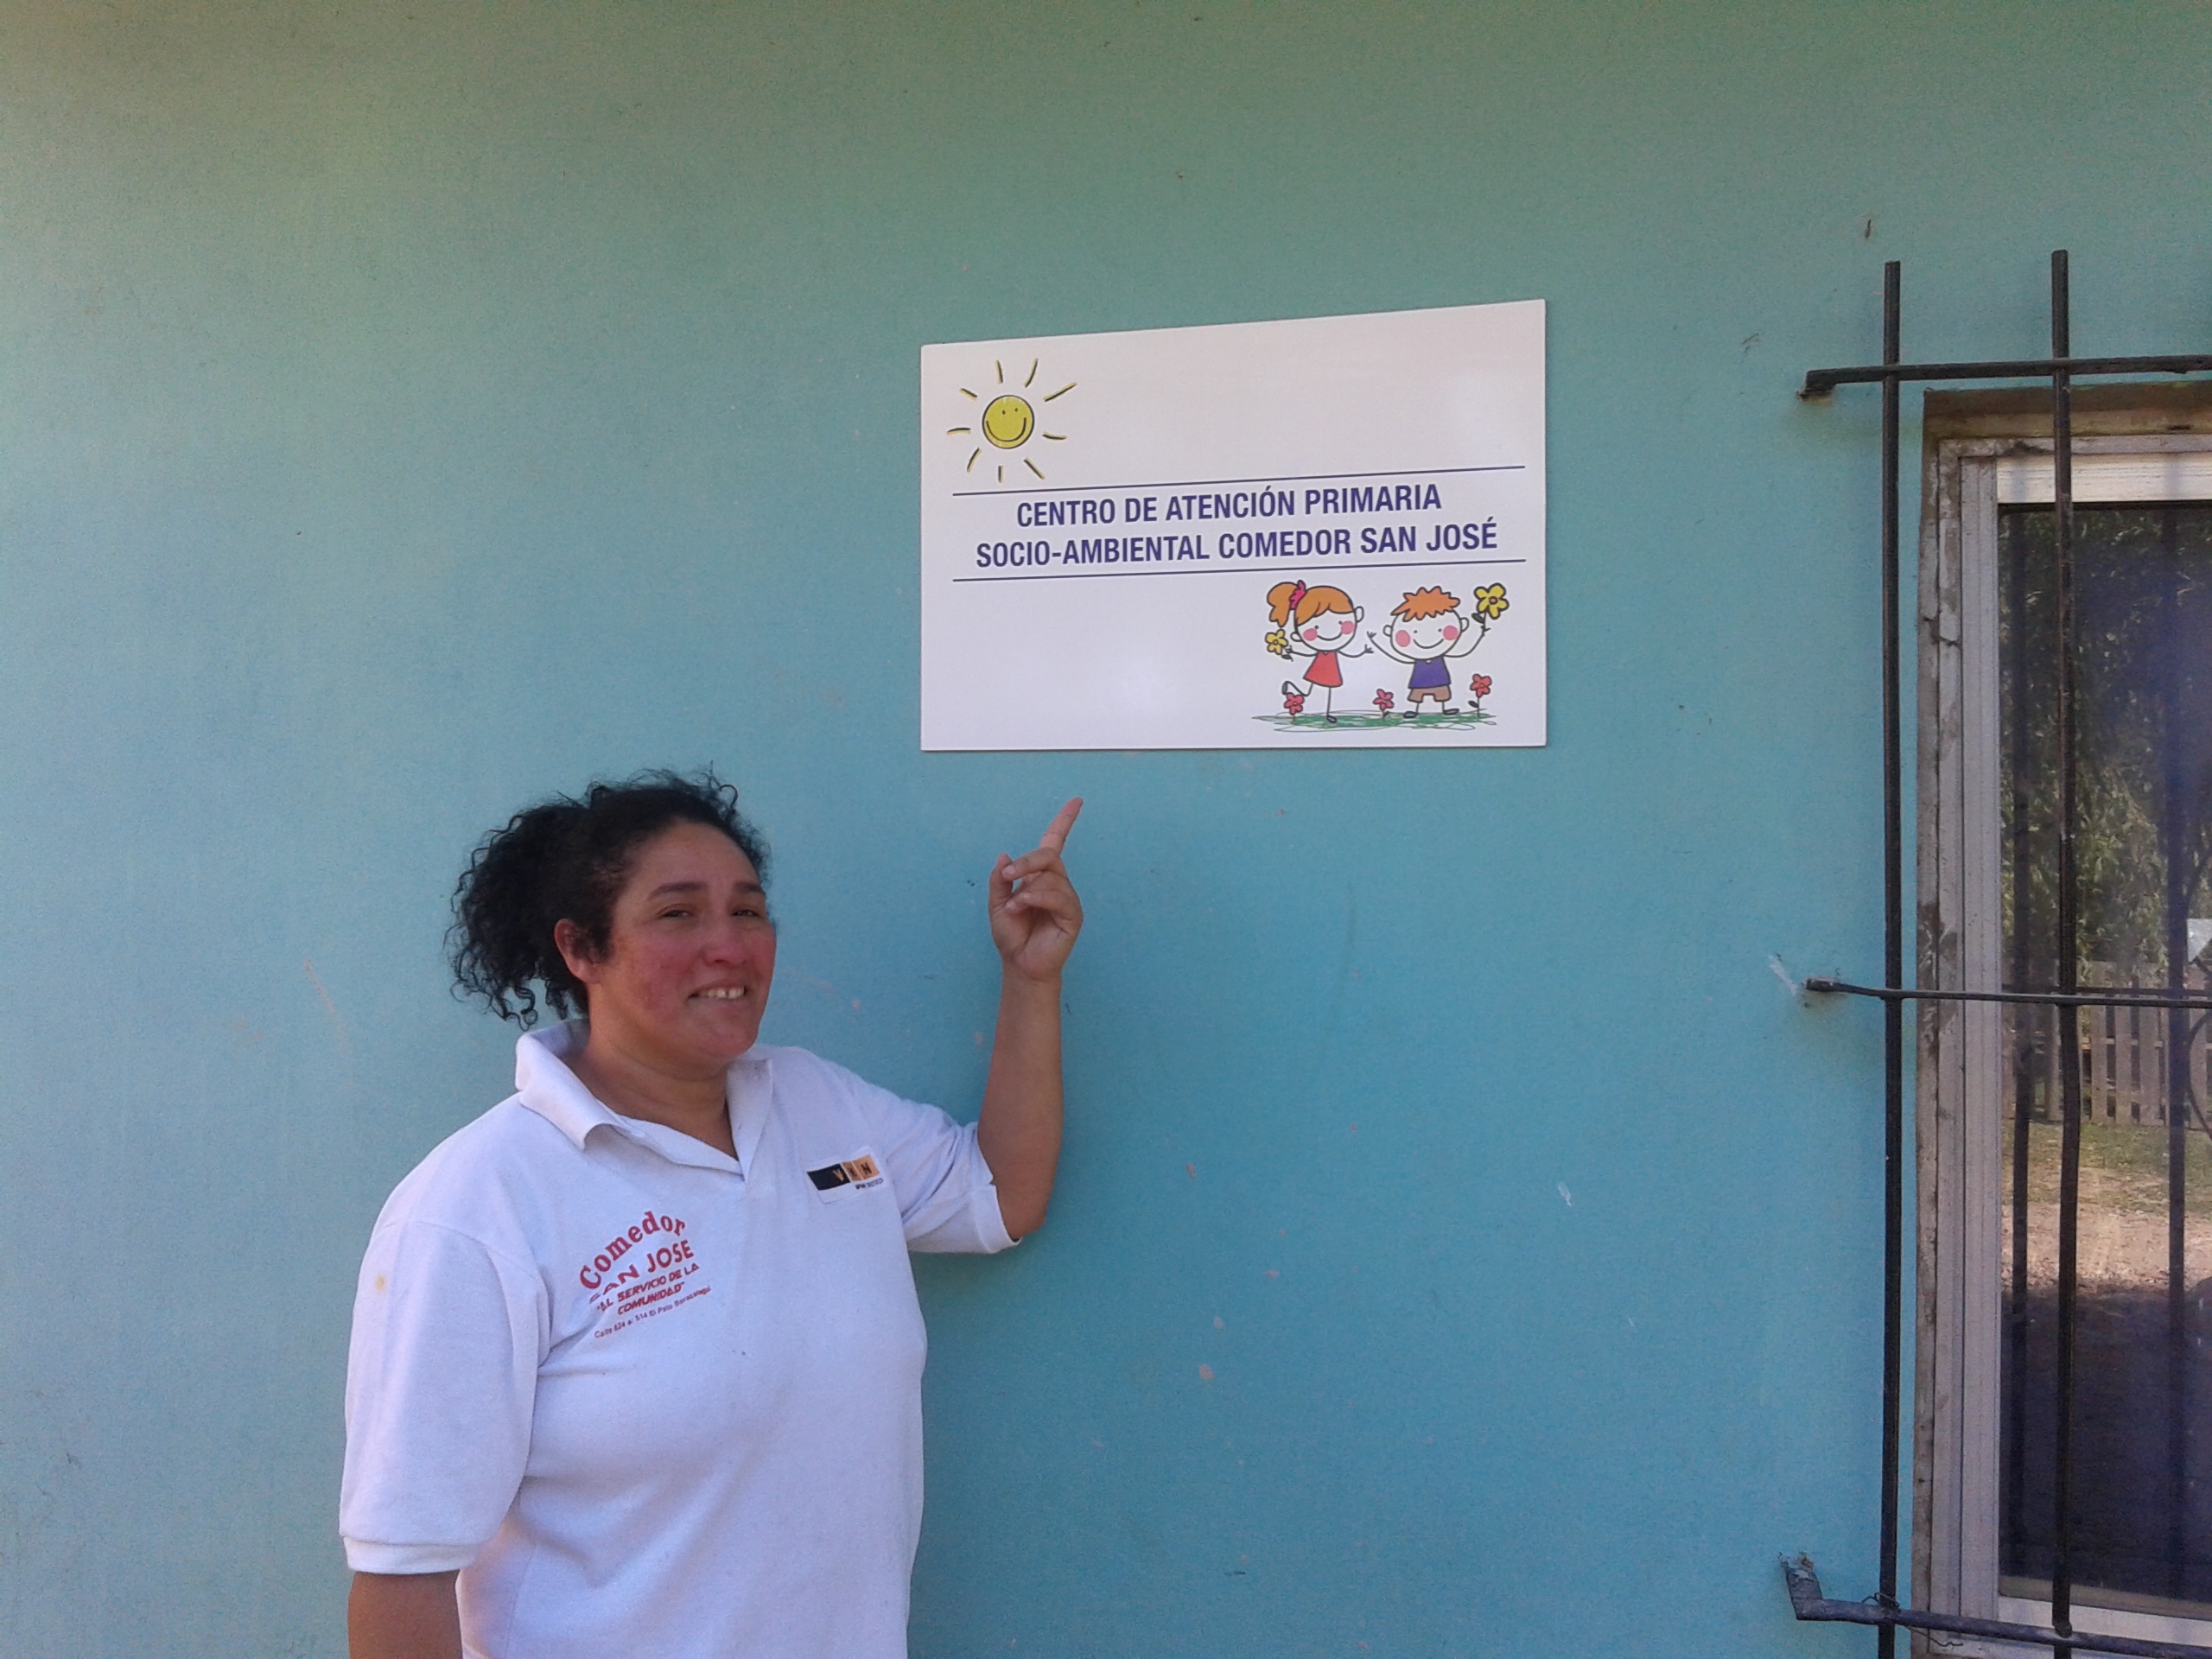 Centro de Atención Primaria Socio - Ambiental Comedor San José